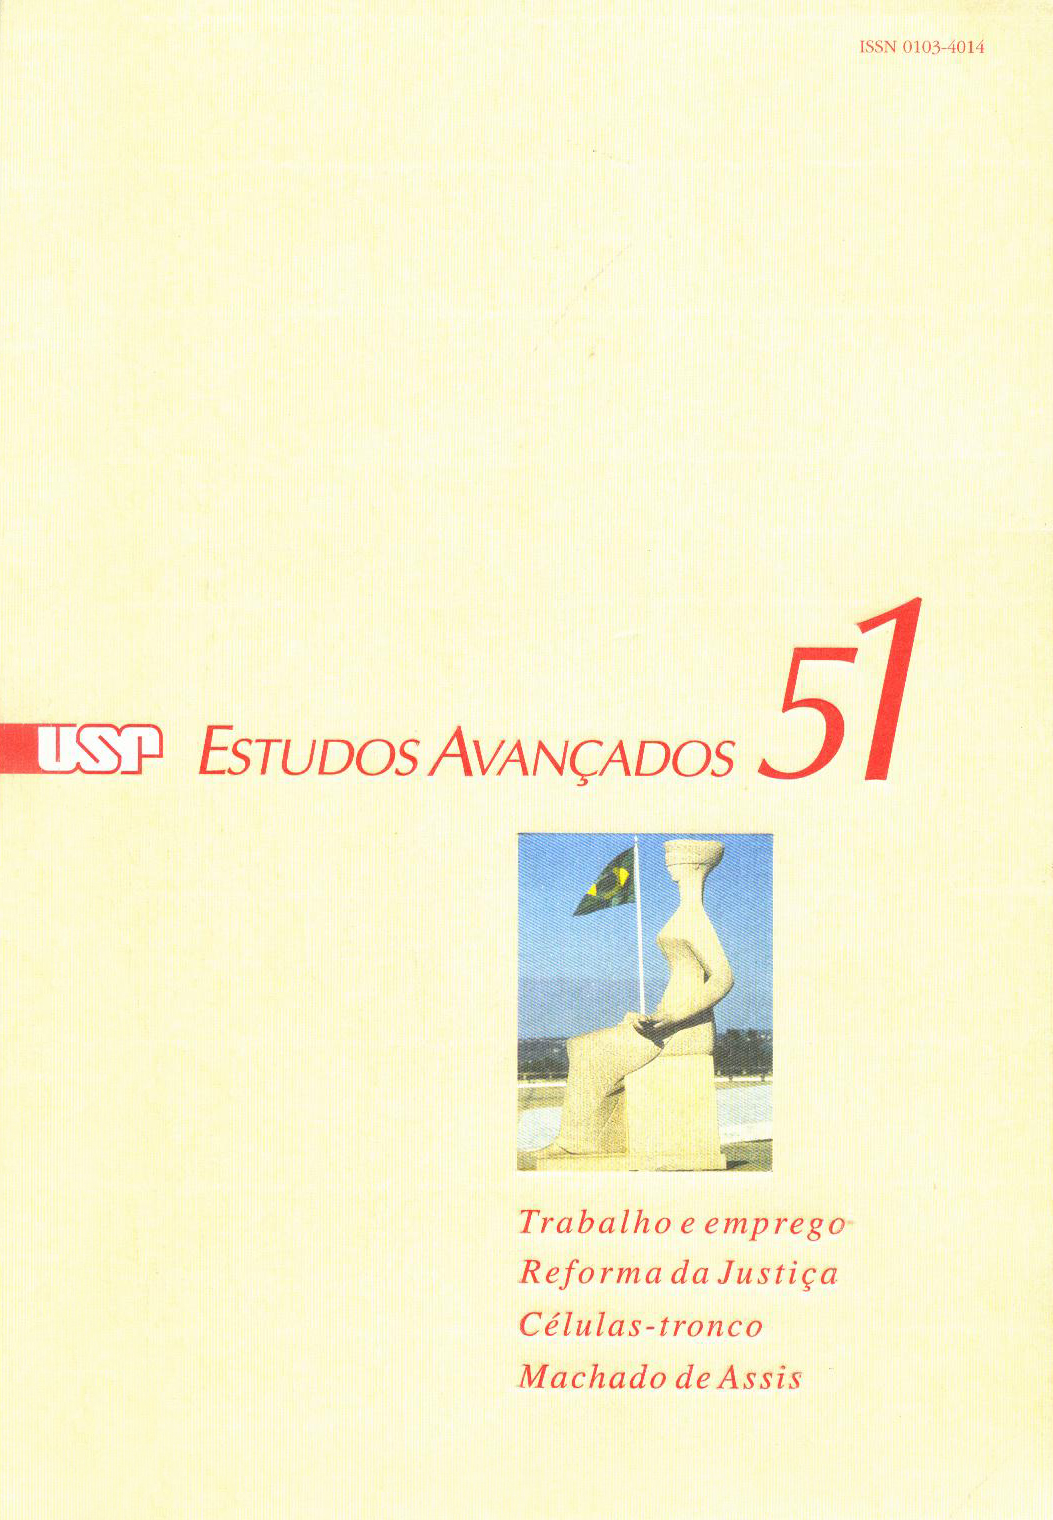 Capa Revista Estudos Avançados v18 n51